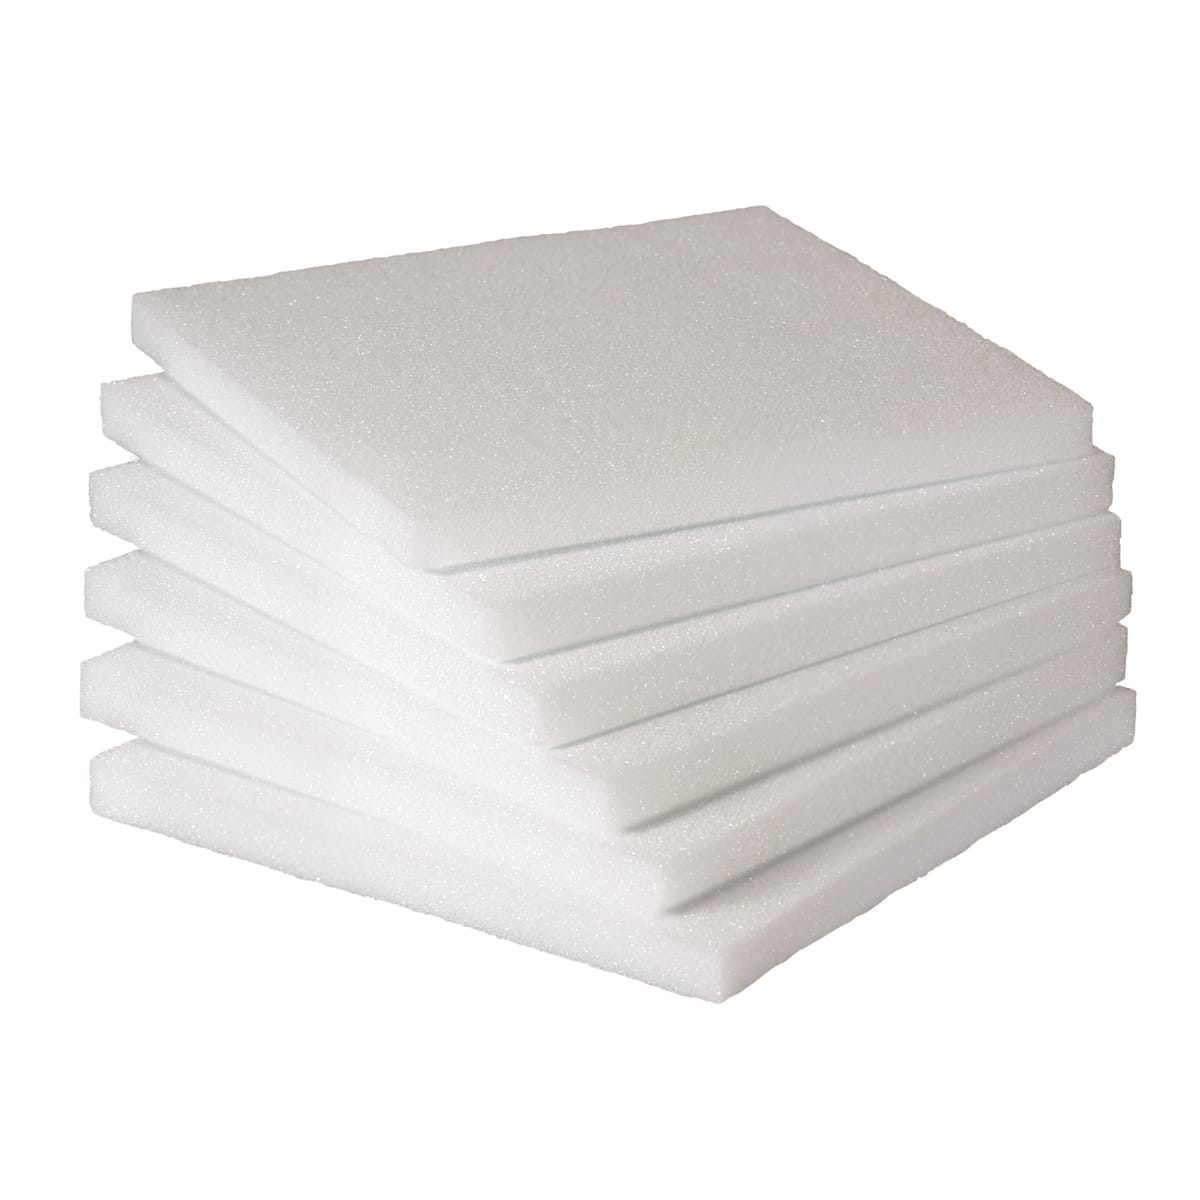 Hygloss 12 x 12 x 1-inch 6 Pieces Styrofoam Blocks 